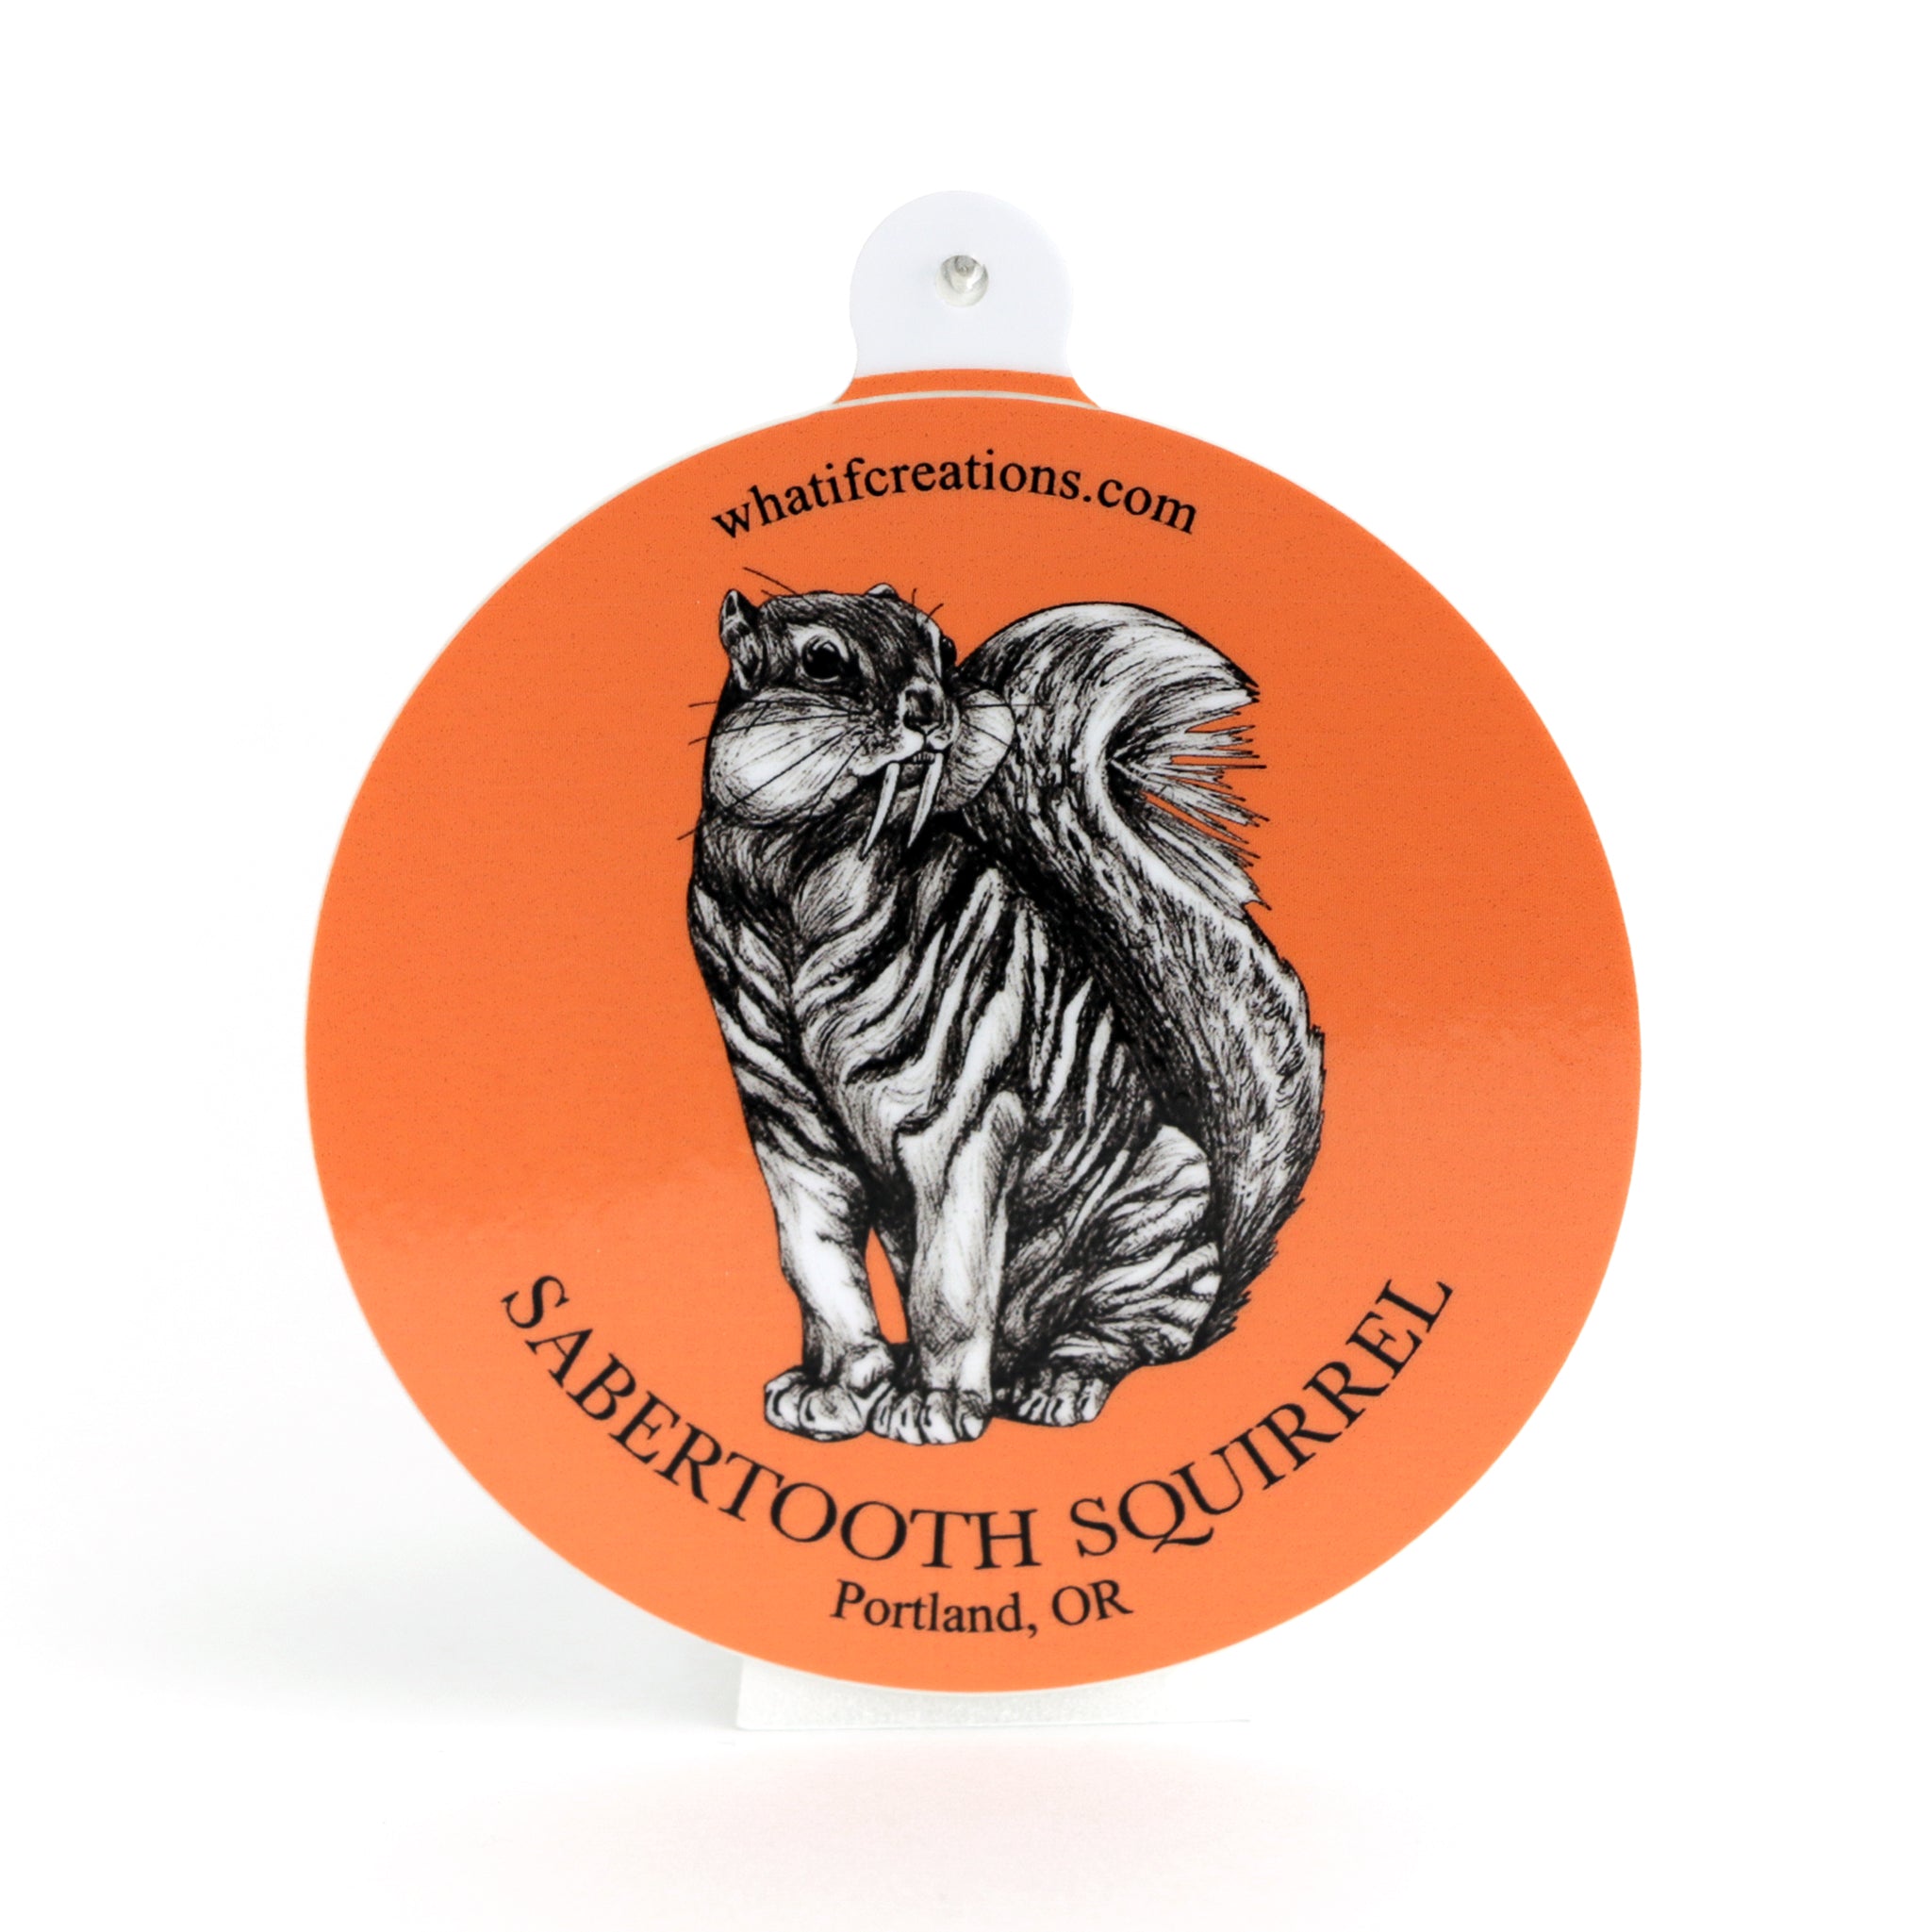 Sabertooth Squirrel | Sabertooth Tiger + Squirrel Hybrid Animal | 3" Vinyl Sticker